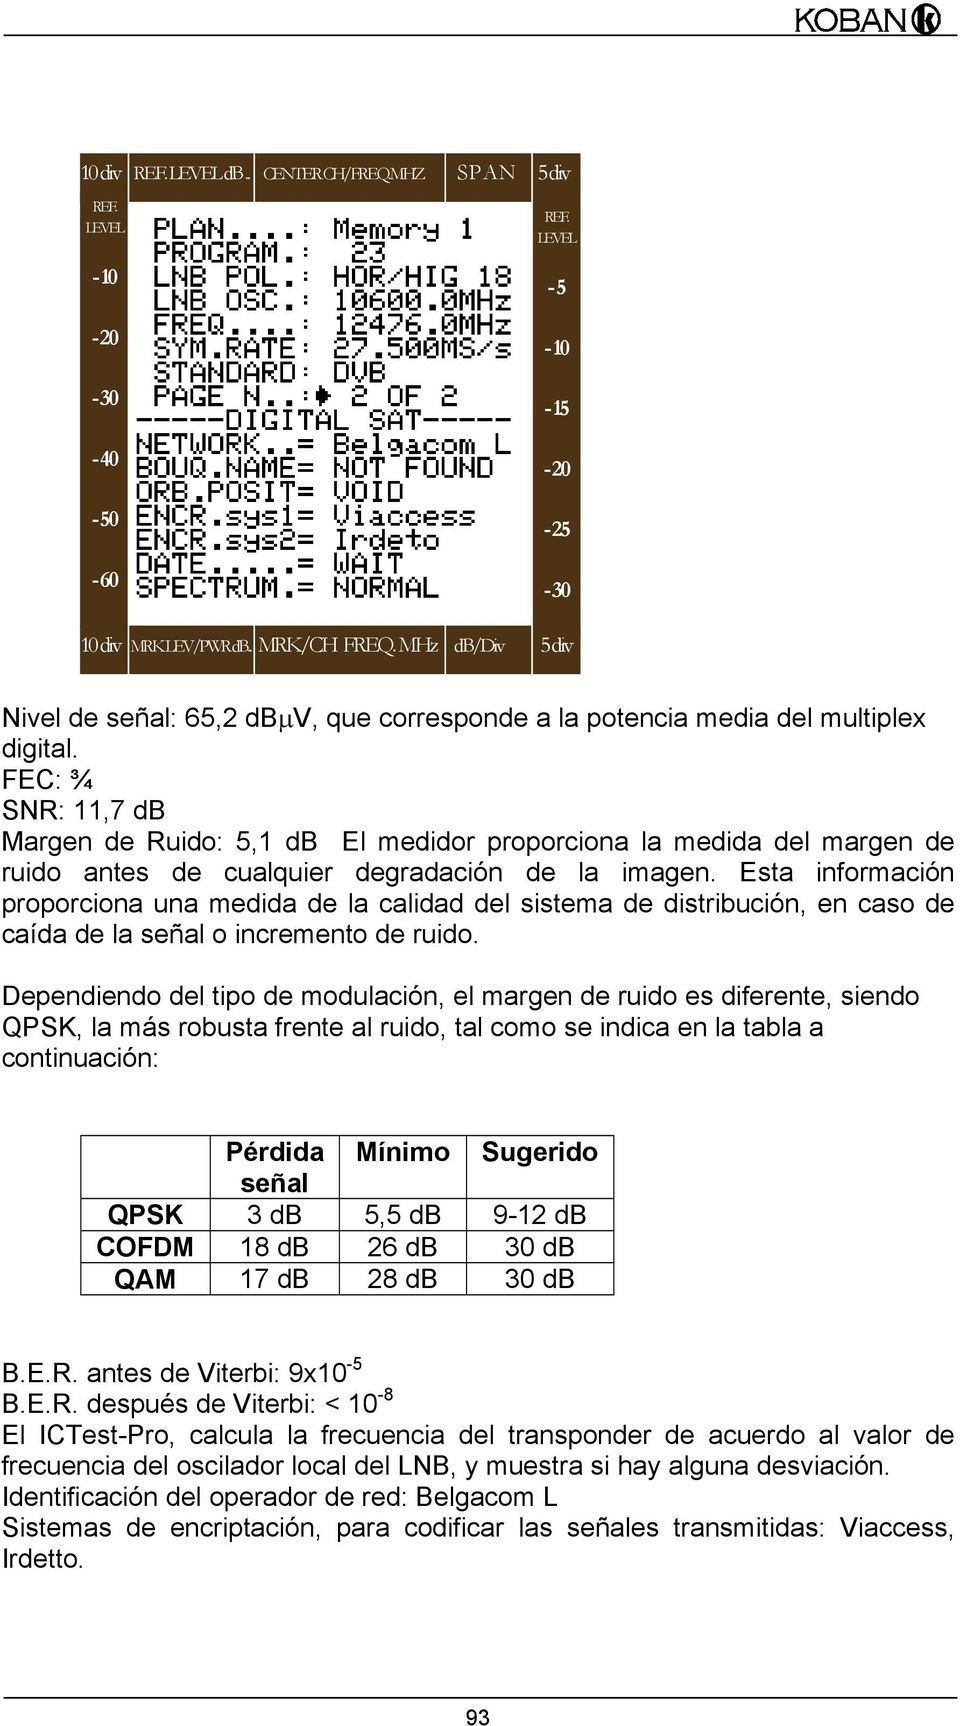 FEC: ¾ SNR: 11,7 db Margen de Ruido: 5,1 db El medidor proporciona la medida del margen de ruido antes de cualquier degradación de la imagen.